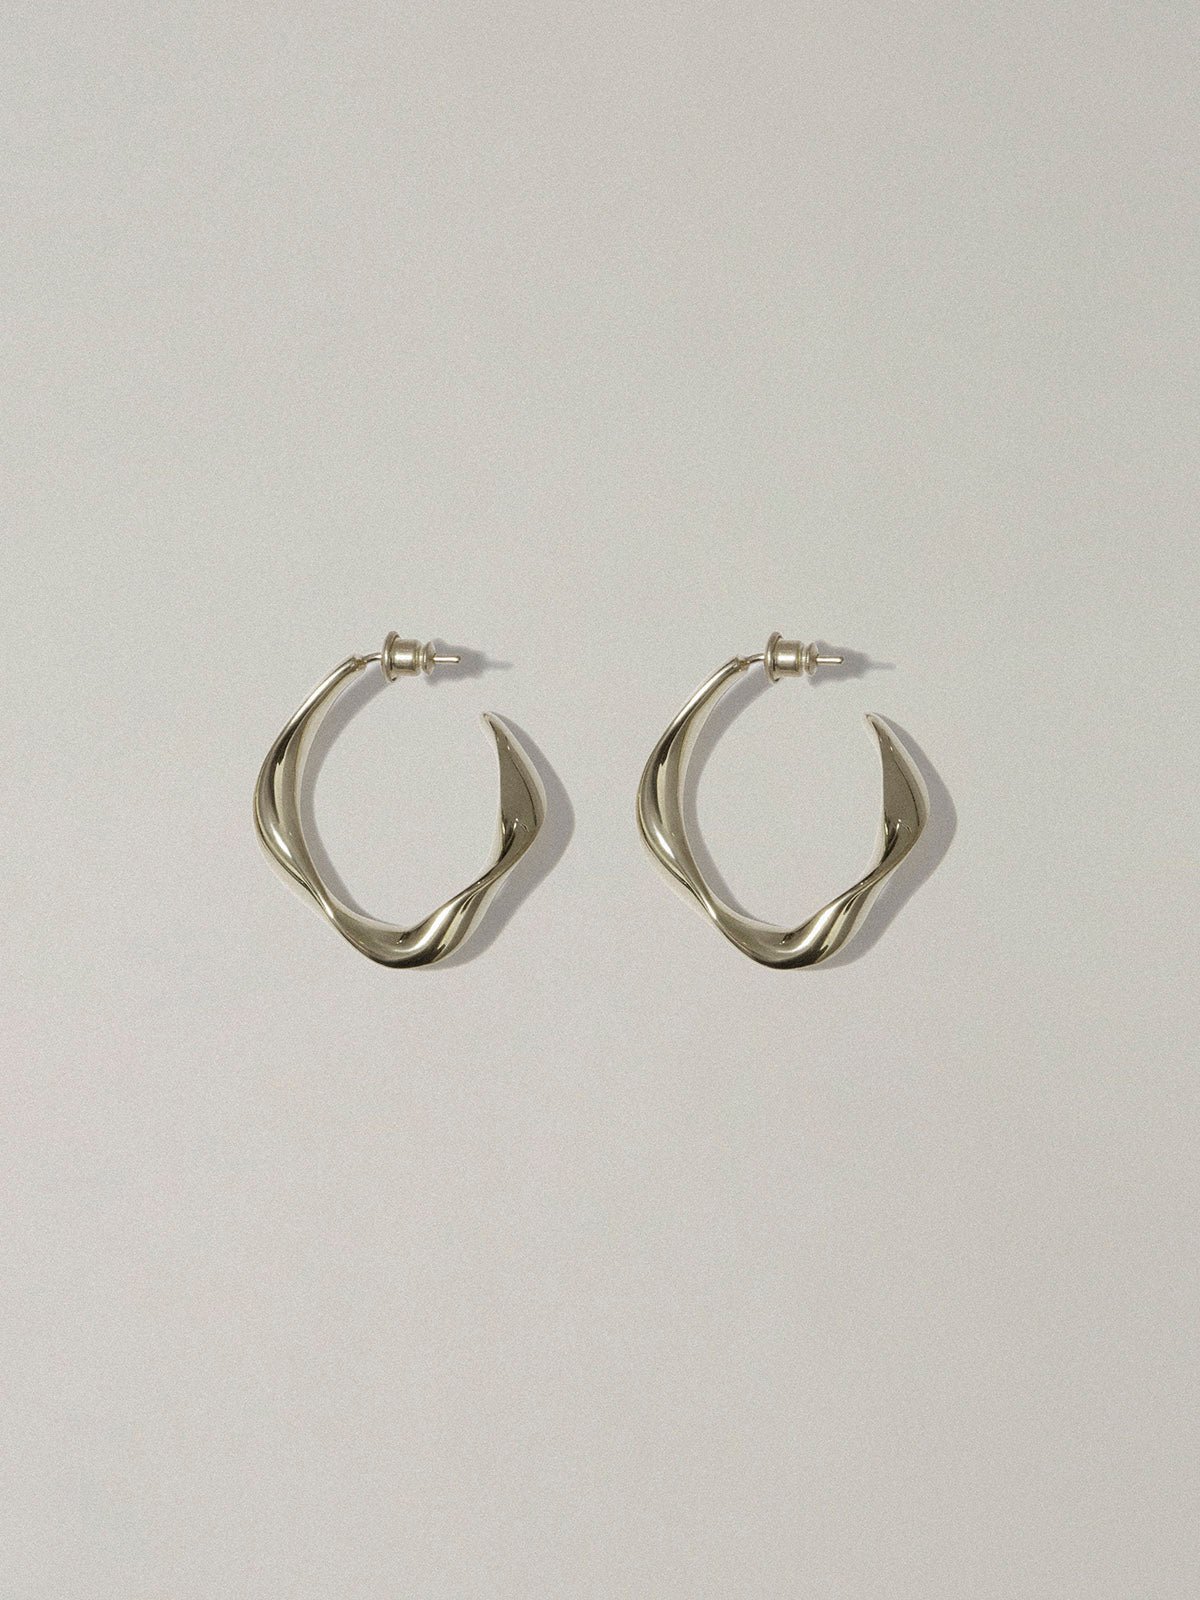 Silver twisted earrings